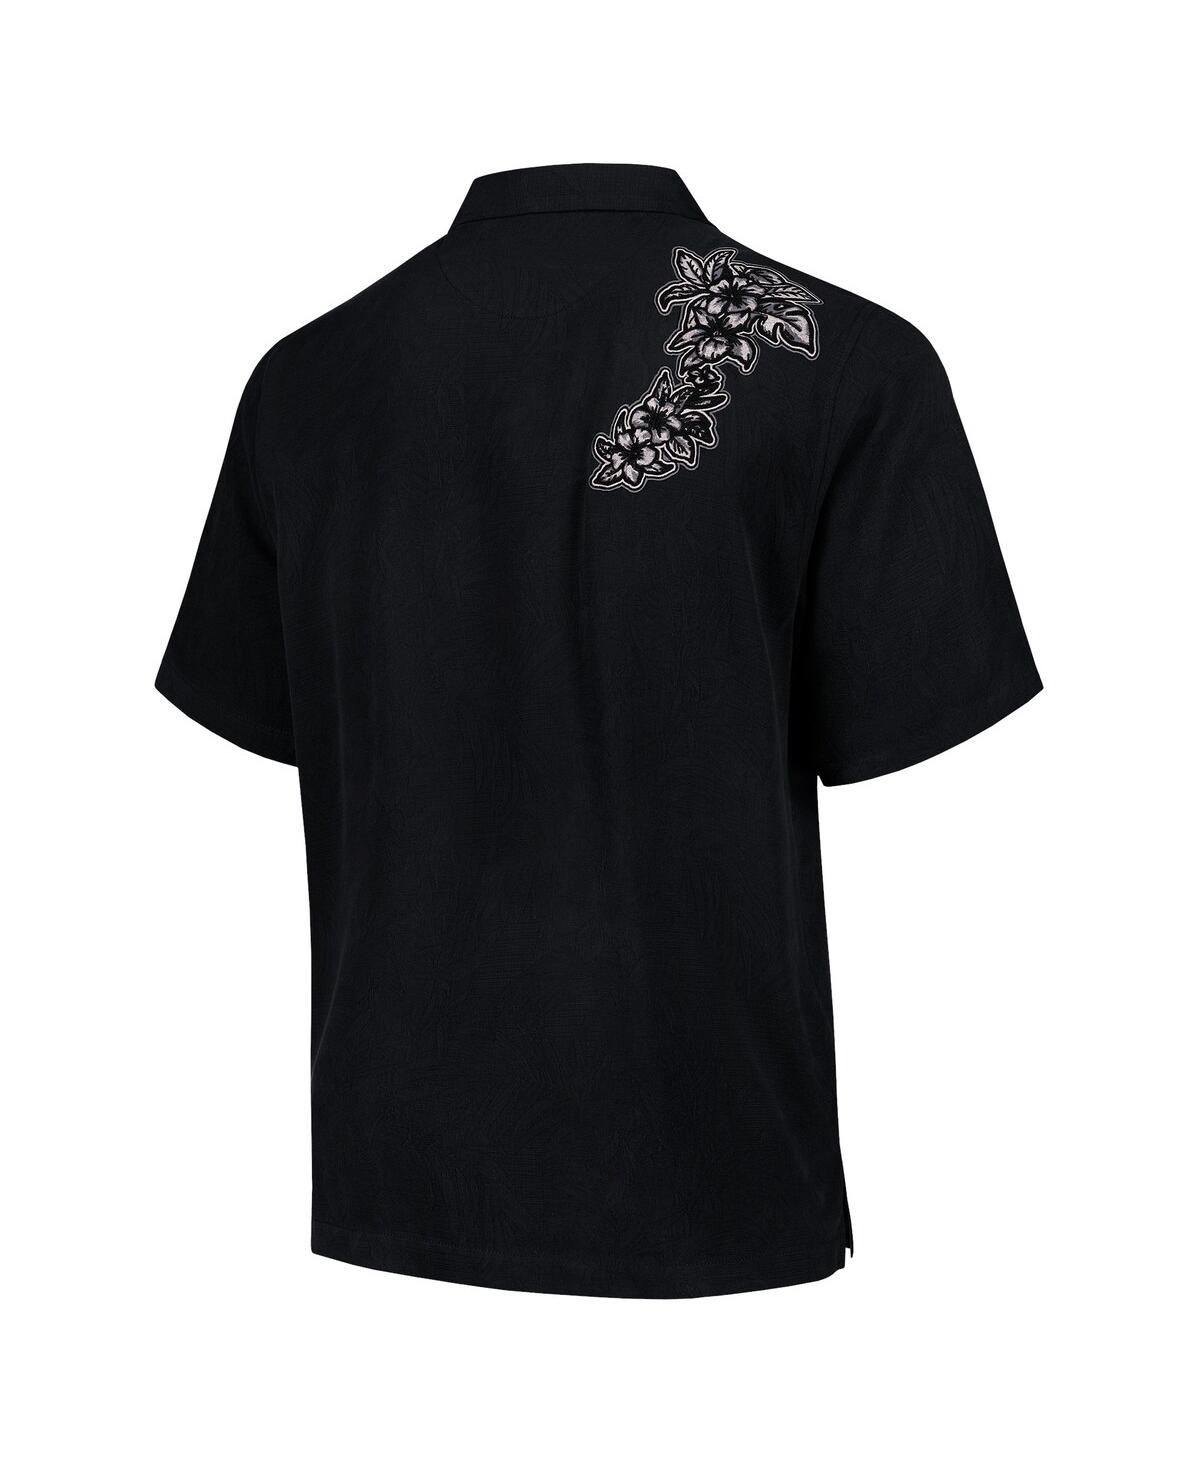 Shop Tommy Bahama Men's Black Las Vegas Raiders Sport Hibiscus Camp Button-up Shirt